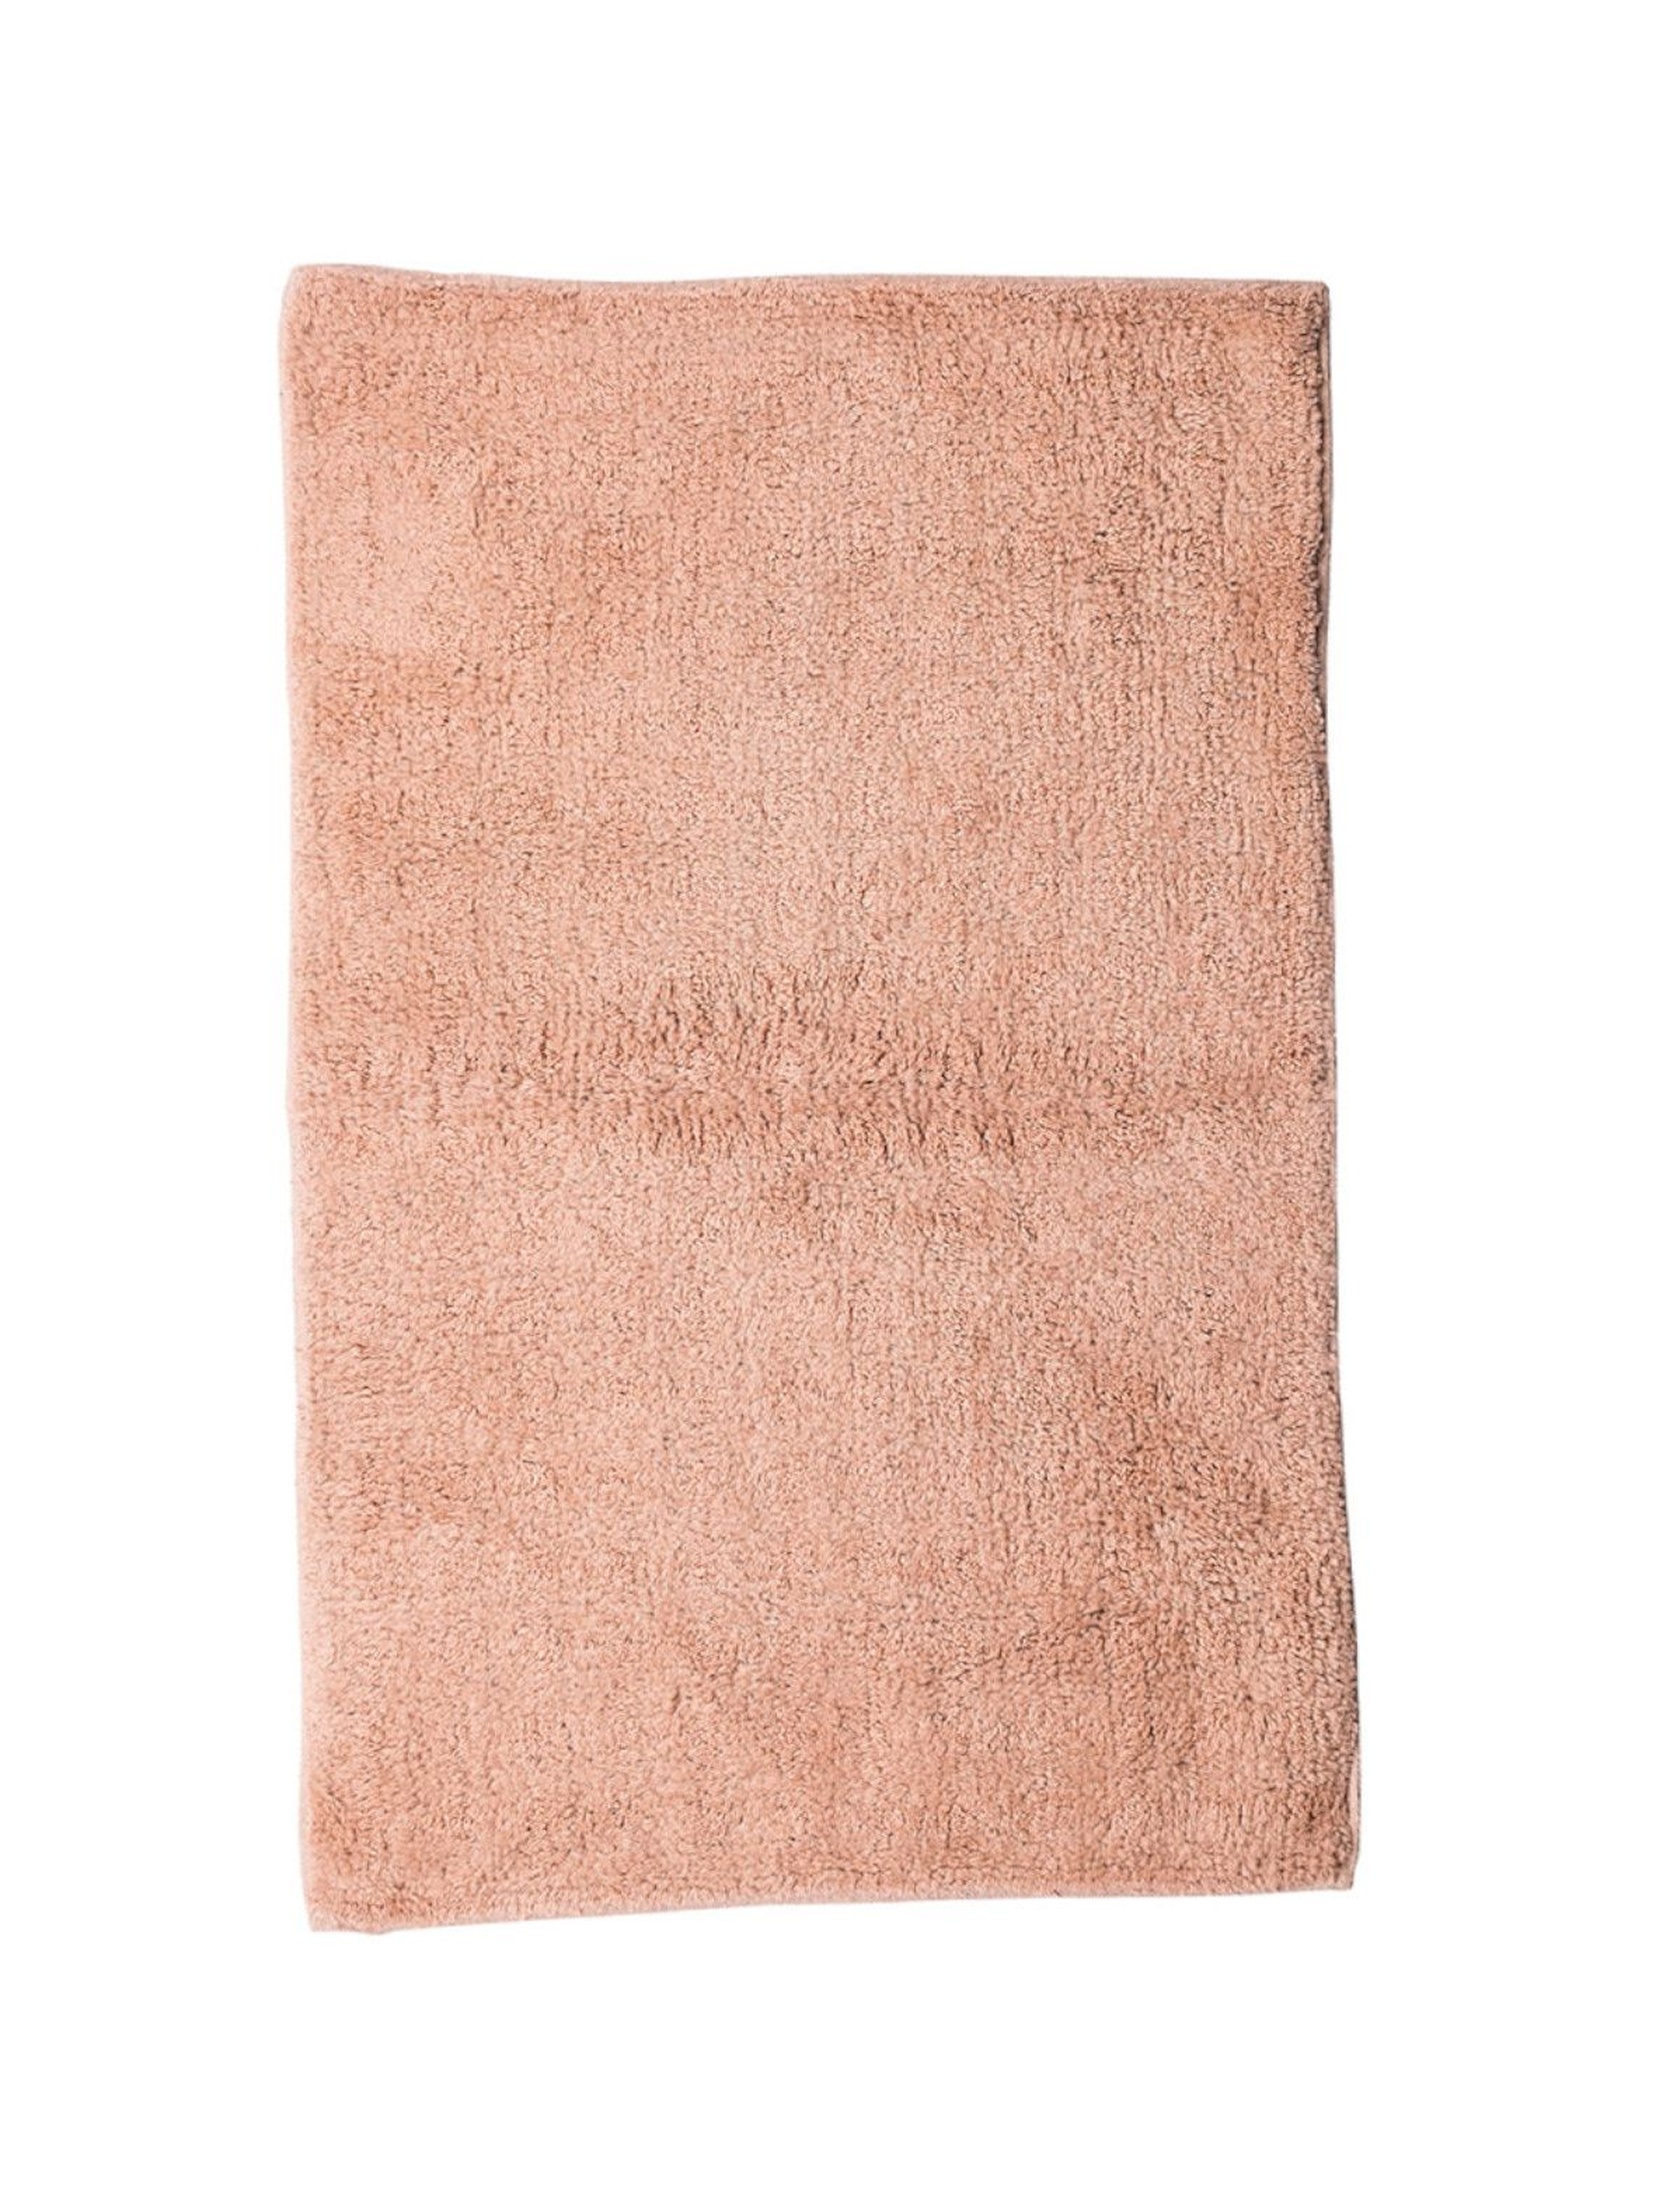 Bawełniany dywanik łazienkowy  - różowy 50x80cm